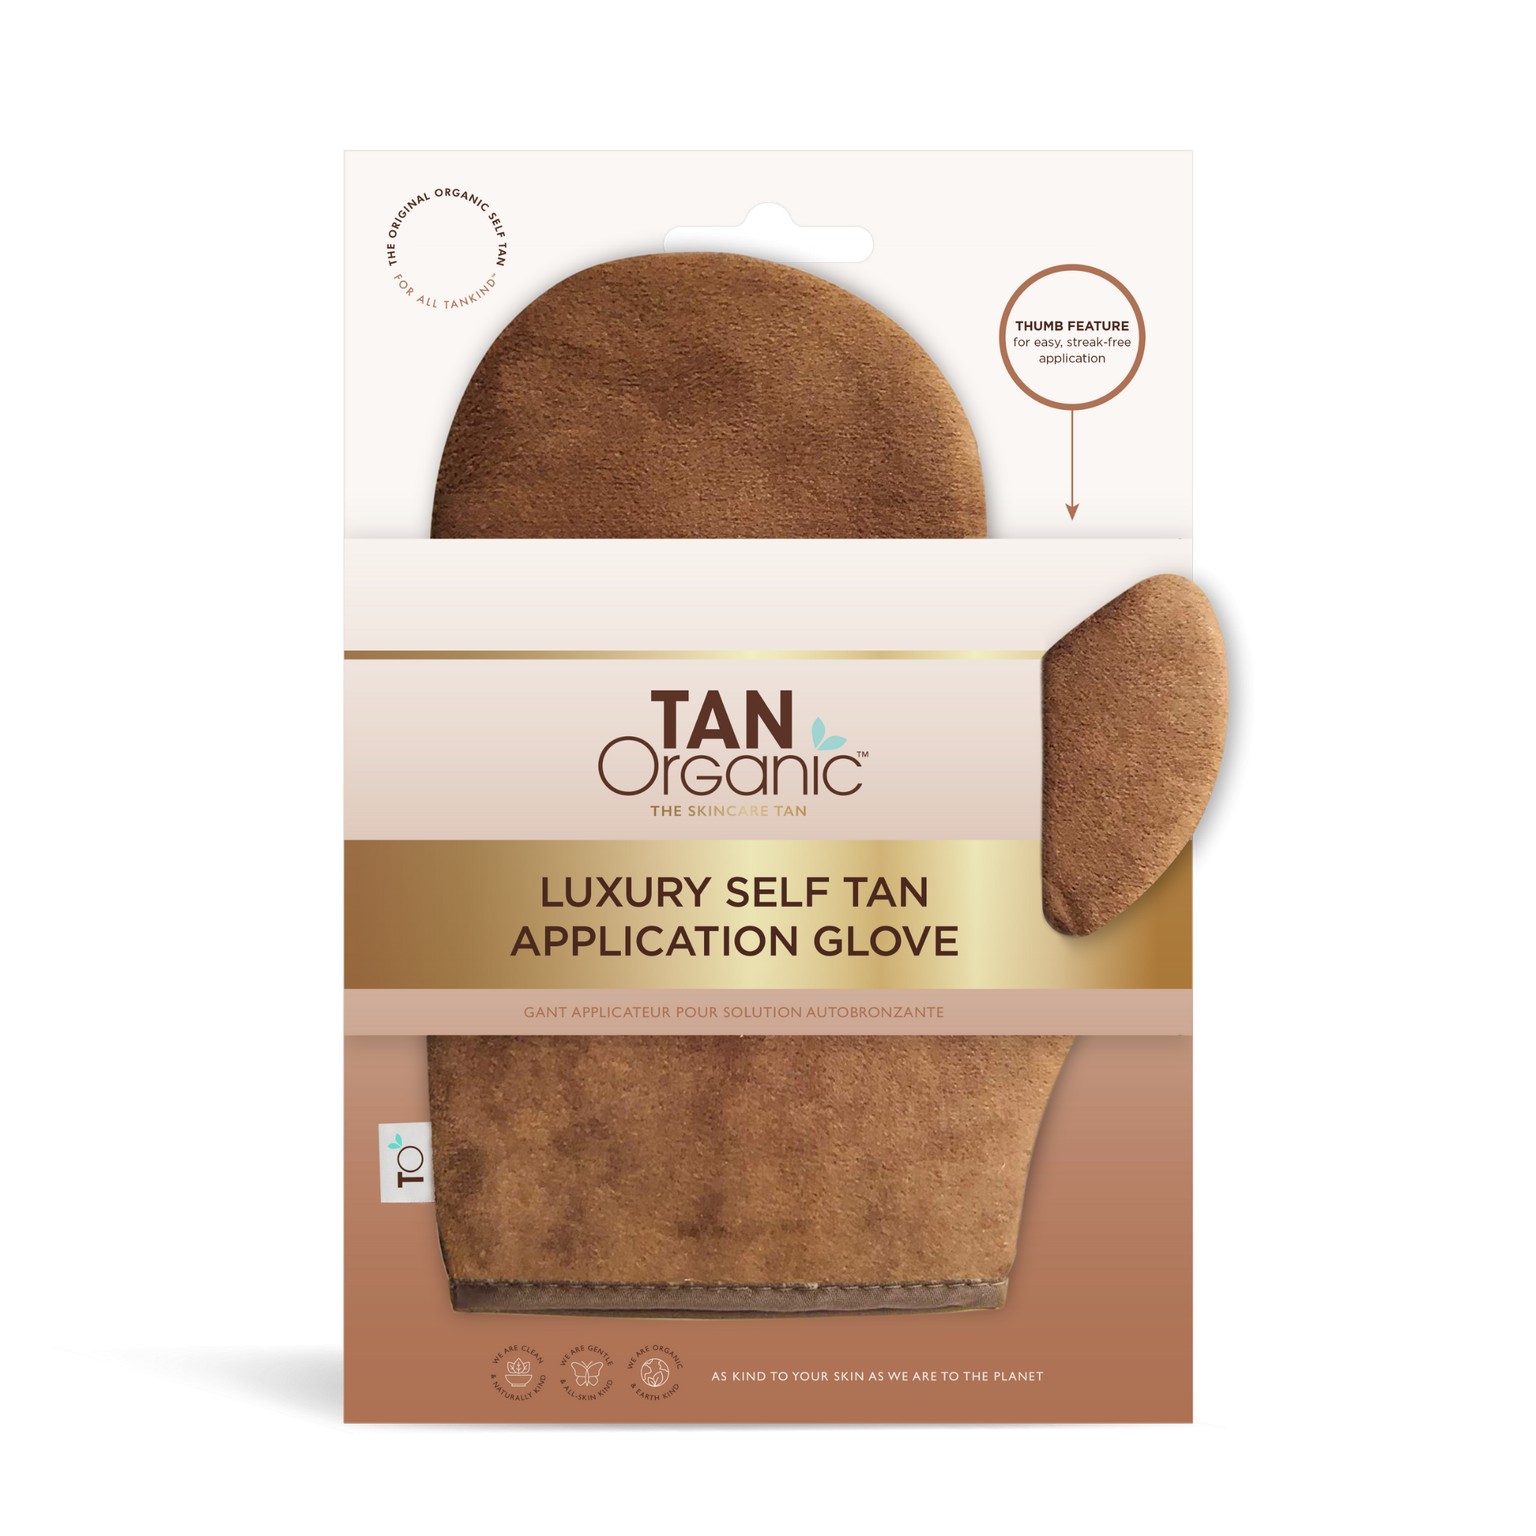 Tan Organic Samoopaľovacie aplikačné rukavice (Application Glov e)